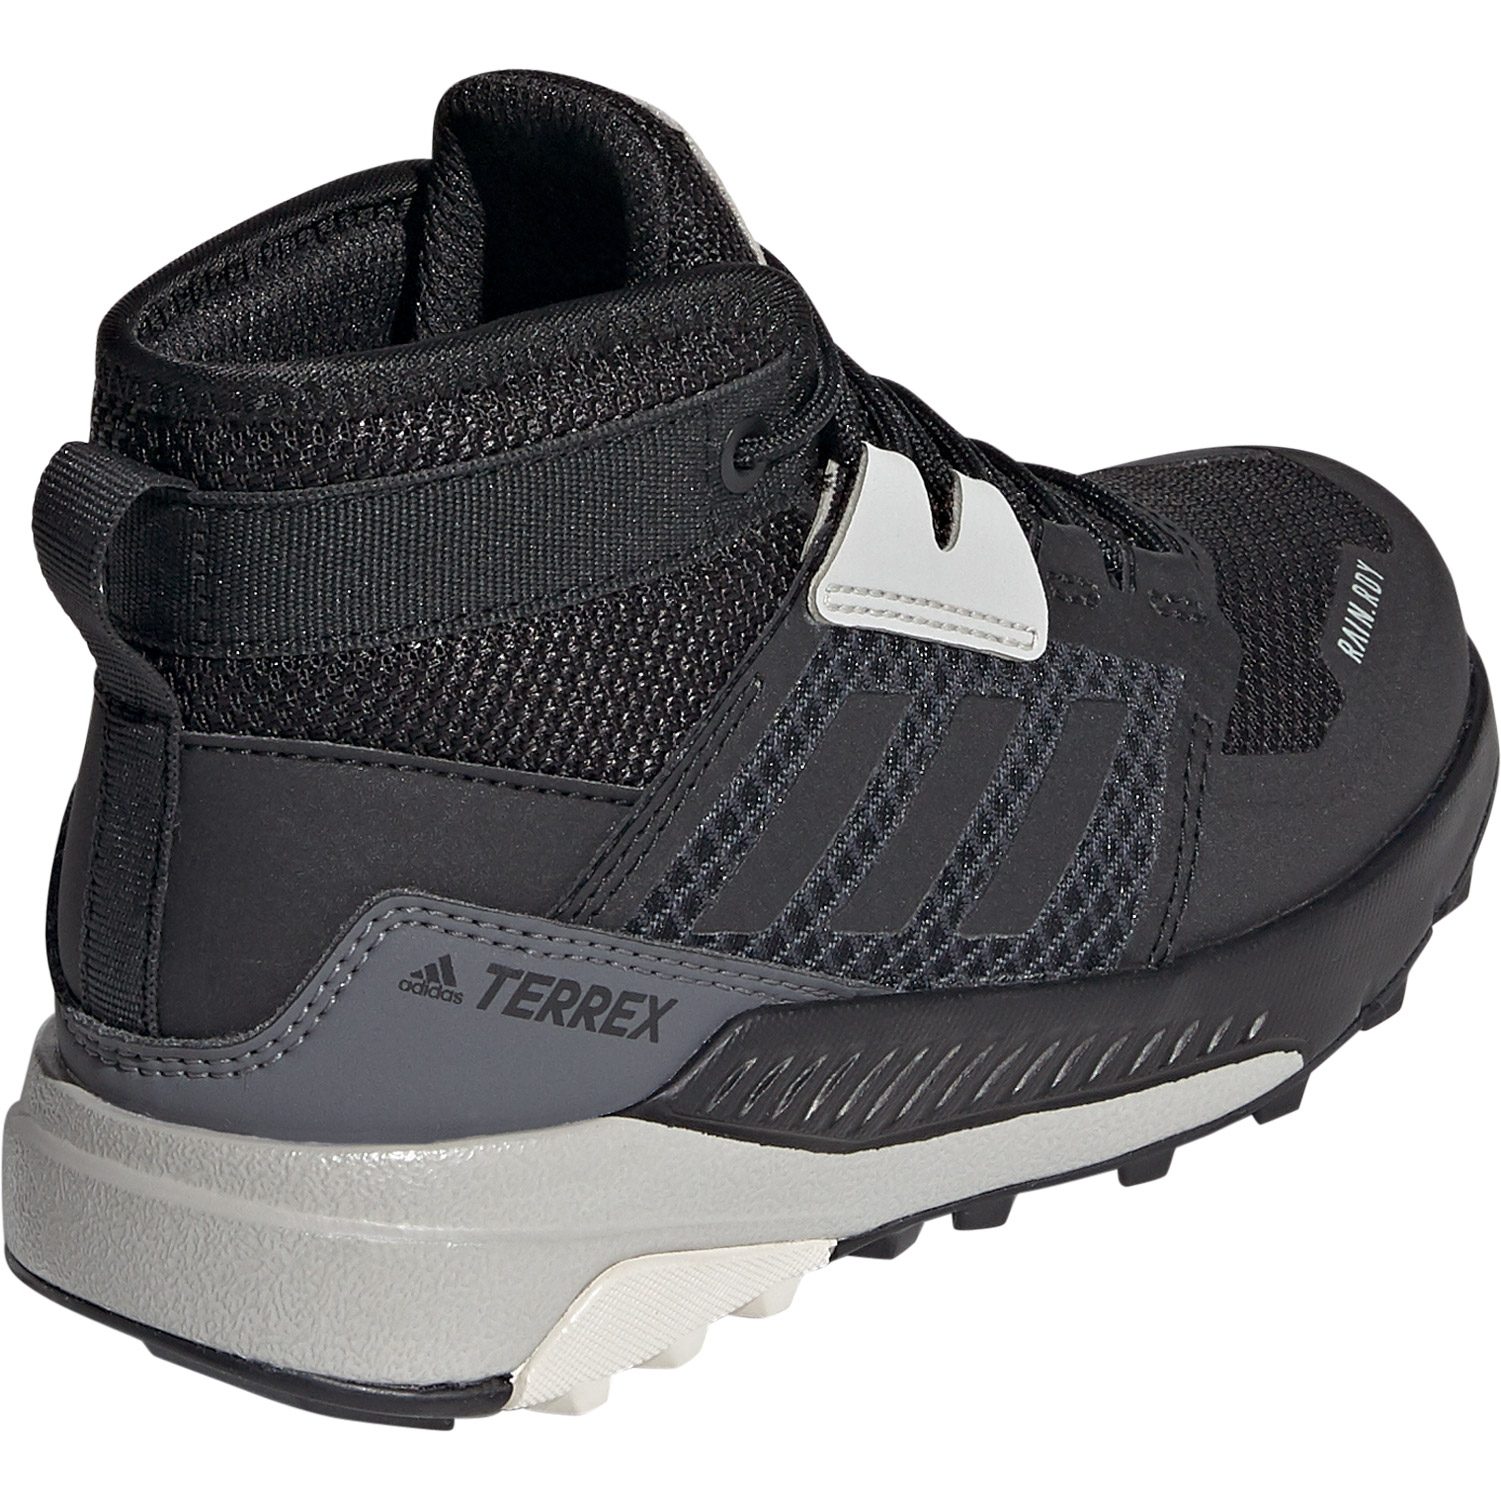 Rain.RDY Hiking Bittl - Trailmaker Shop Terrex adidas black core at Kids Shoes Sport TERREX Mid